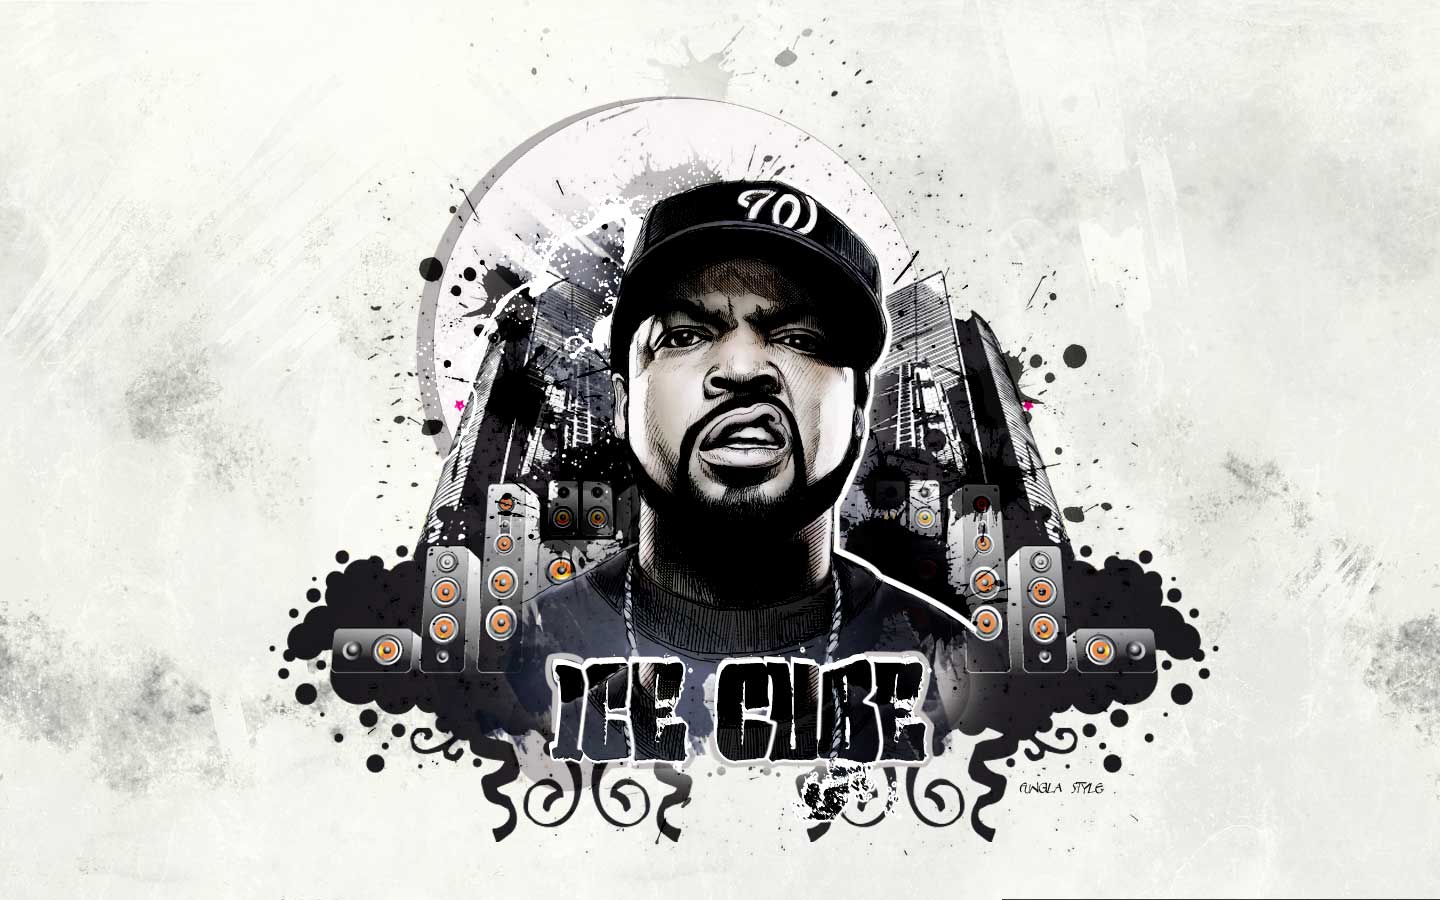 Rapper Ice Cube HD Rapper Wallpapers  HD Wallpapers  ID 53195